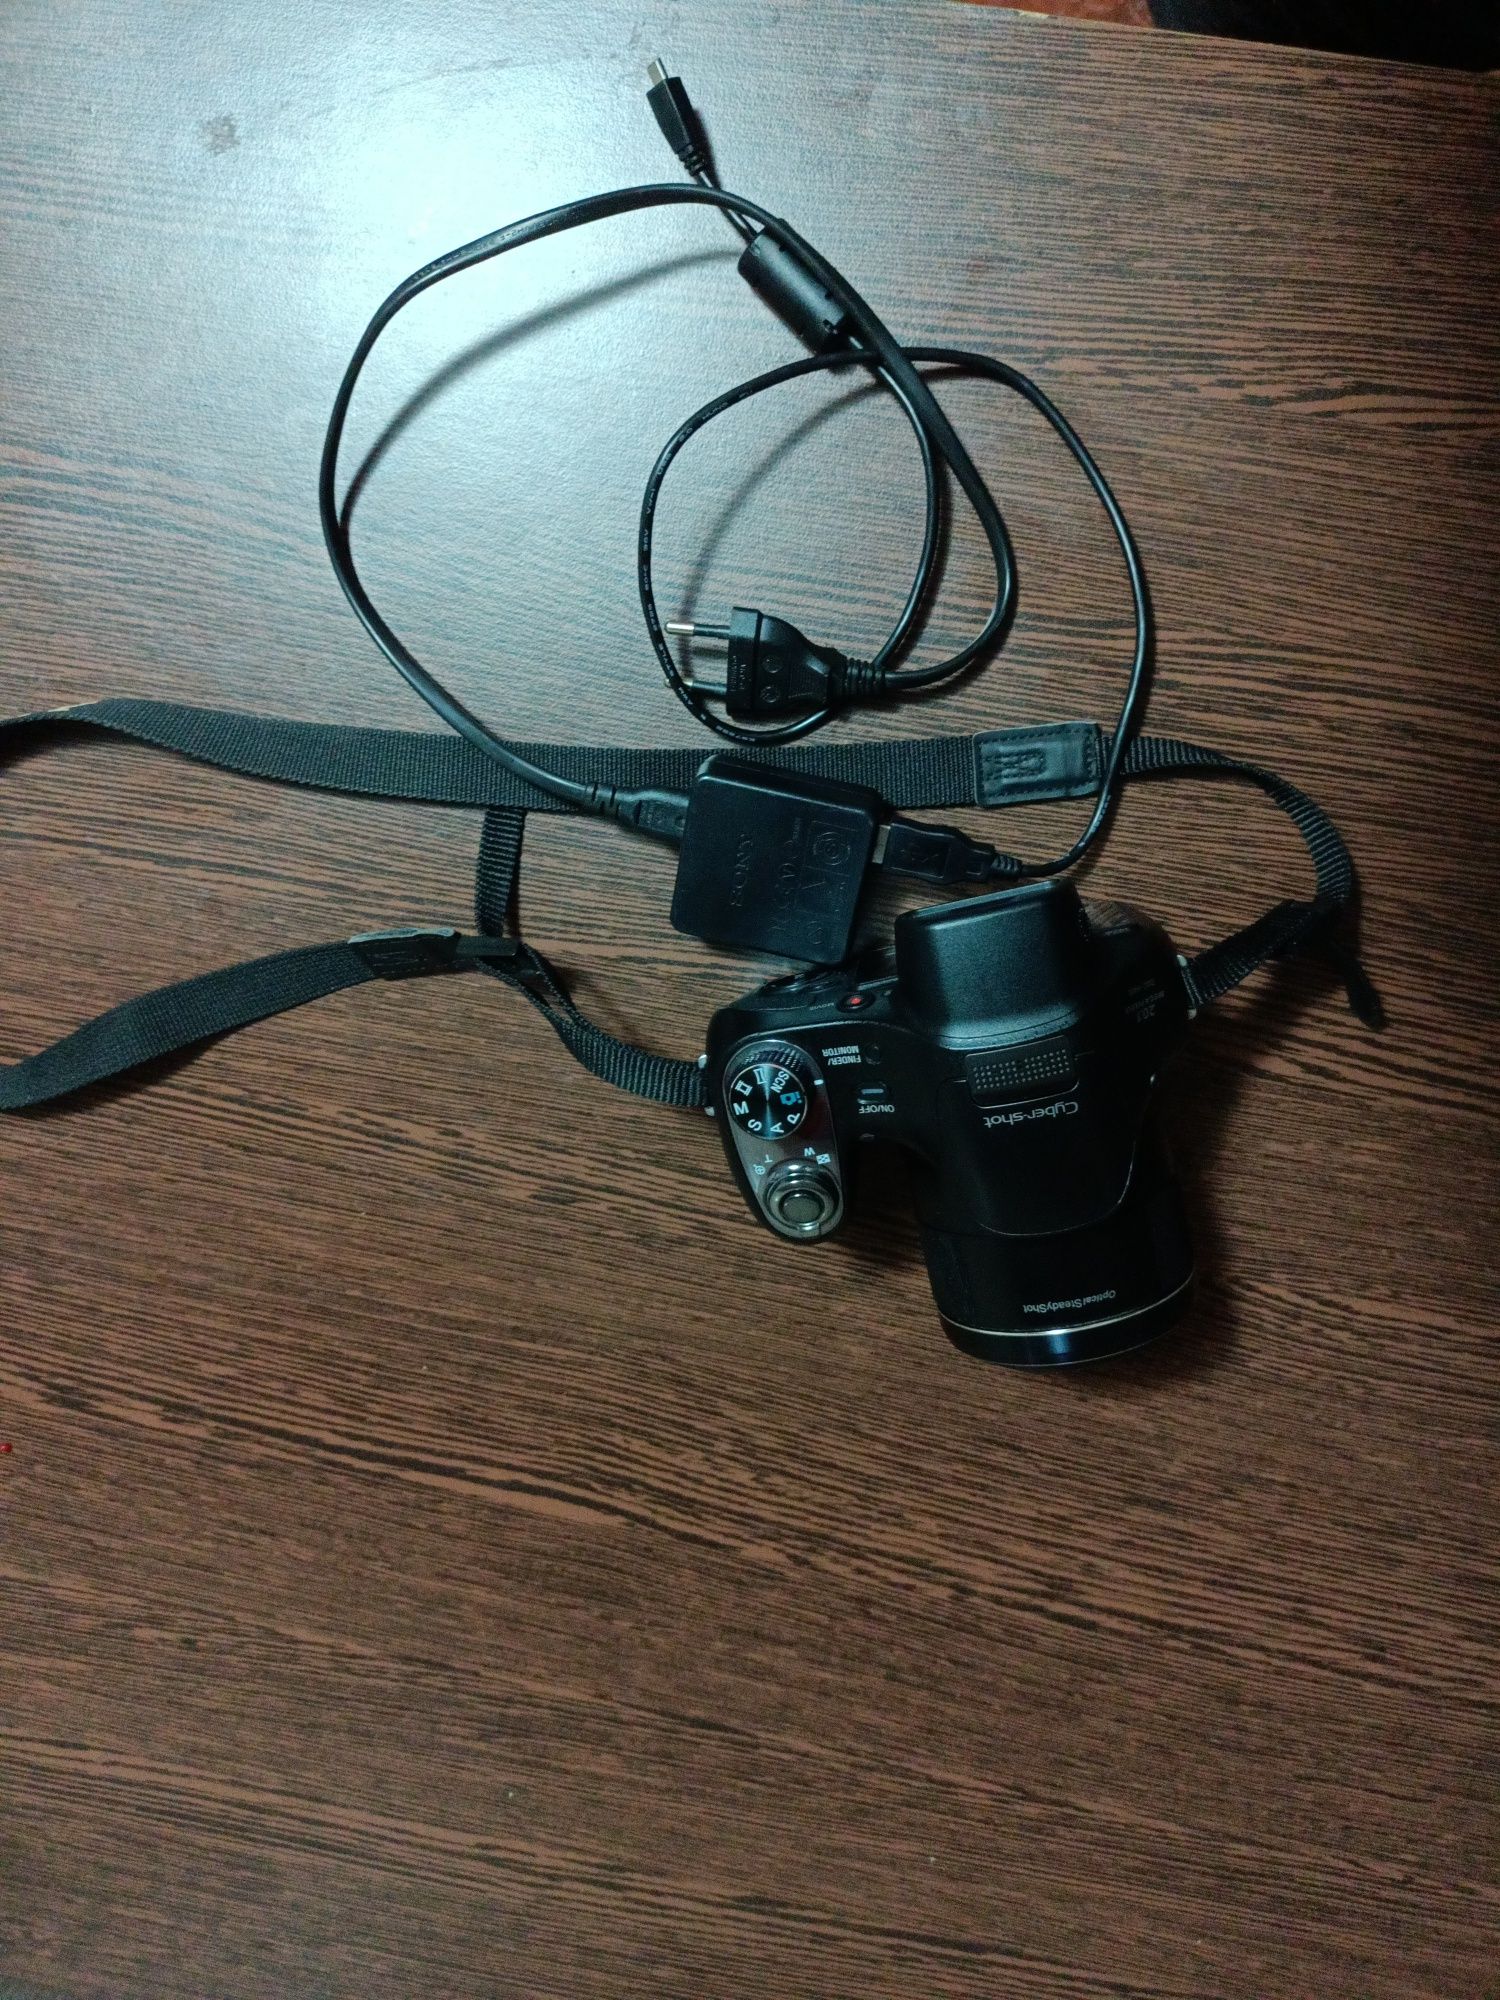 Aparat foto Sony Cyber-shot model DSC-H 400